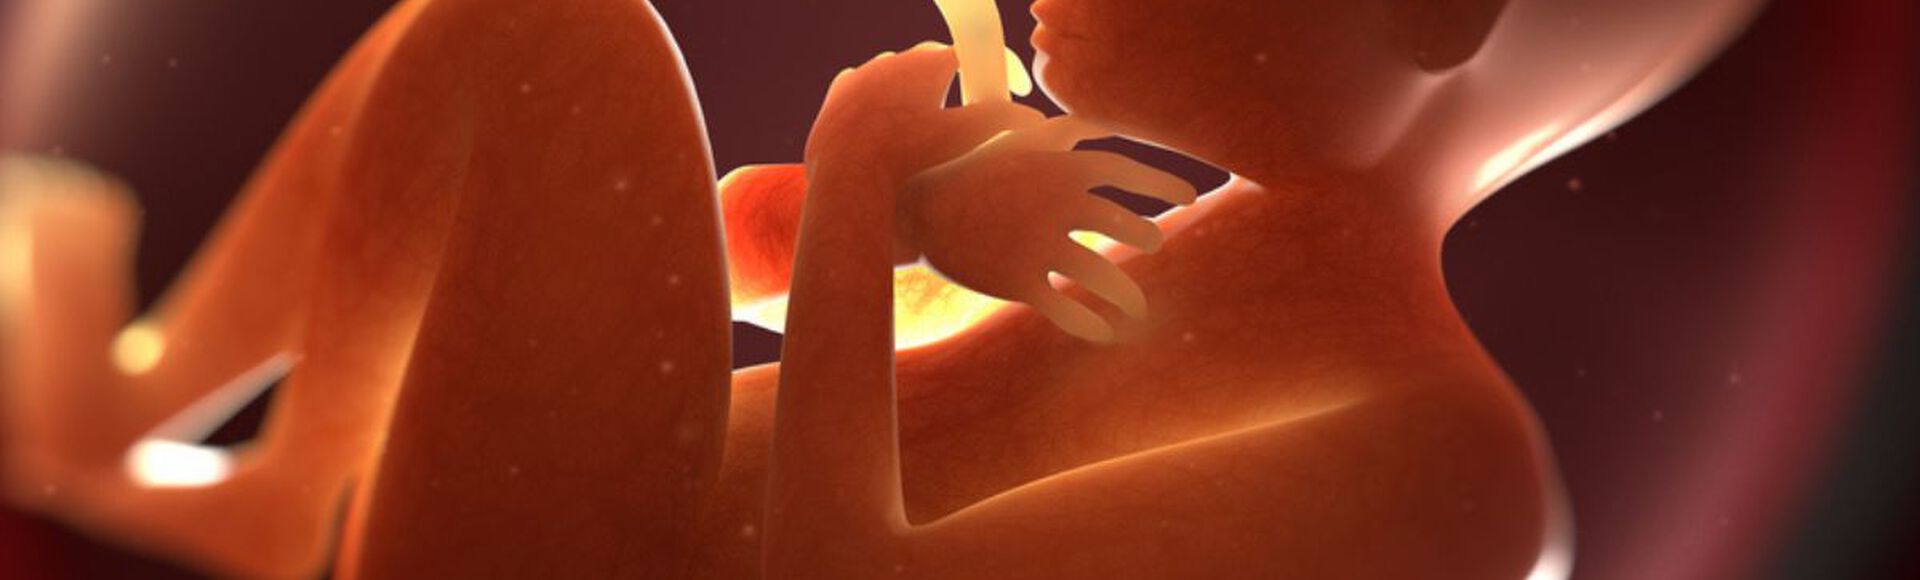 Ilustração que mostra bebê dentro da barriga